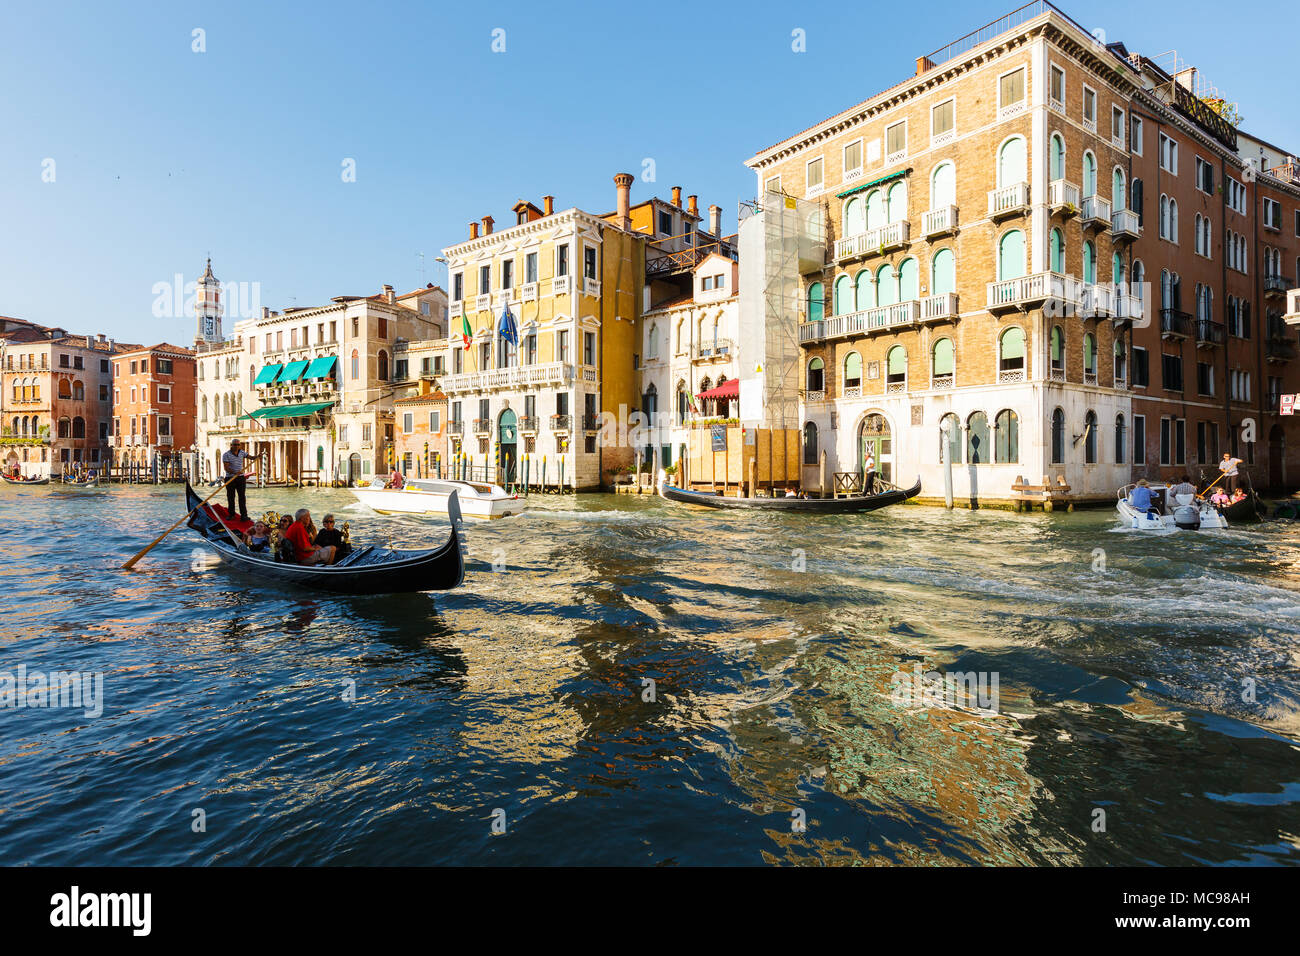 Venise, Italie - juin, 21, 2013 : vue typique de la ville de Venise, le Grand canal, beaucoup de touristes jouissent d'un repos sur les gondoles et les bateaux de plaisance. Campanil Banque D'Images